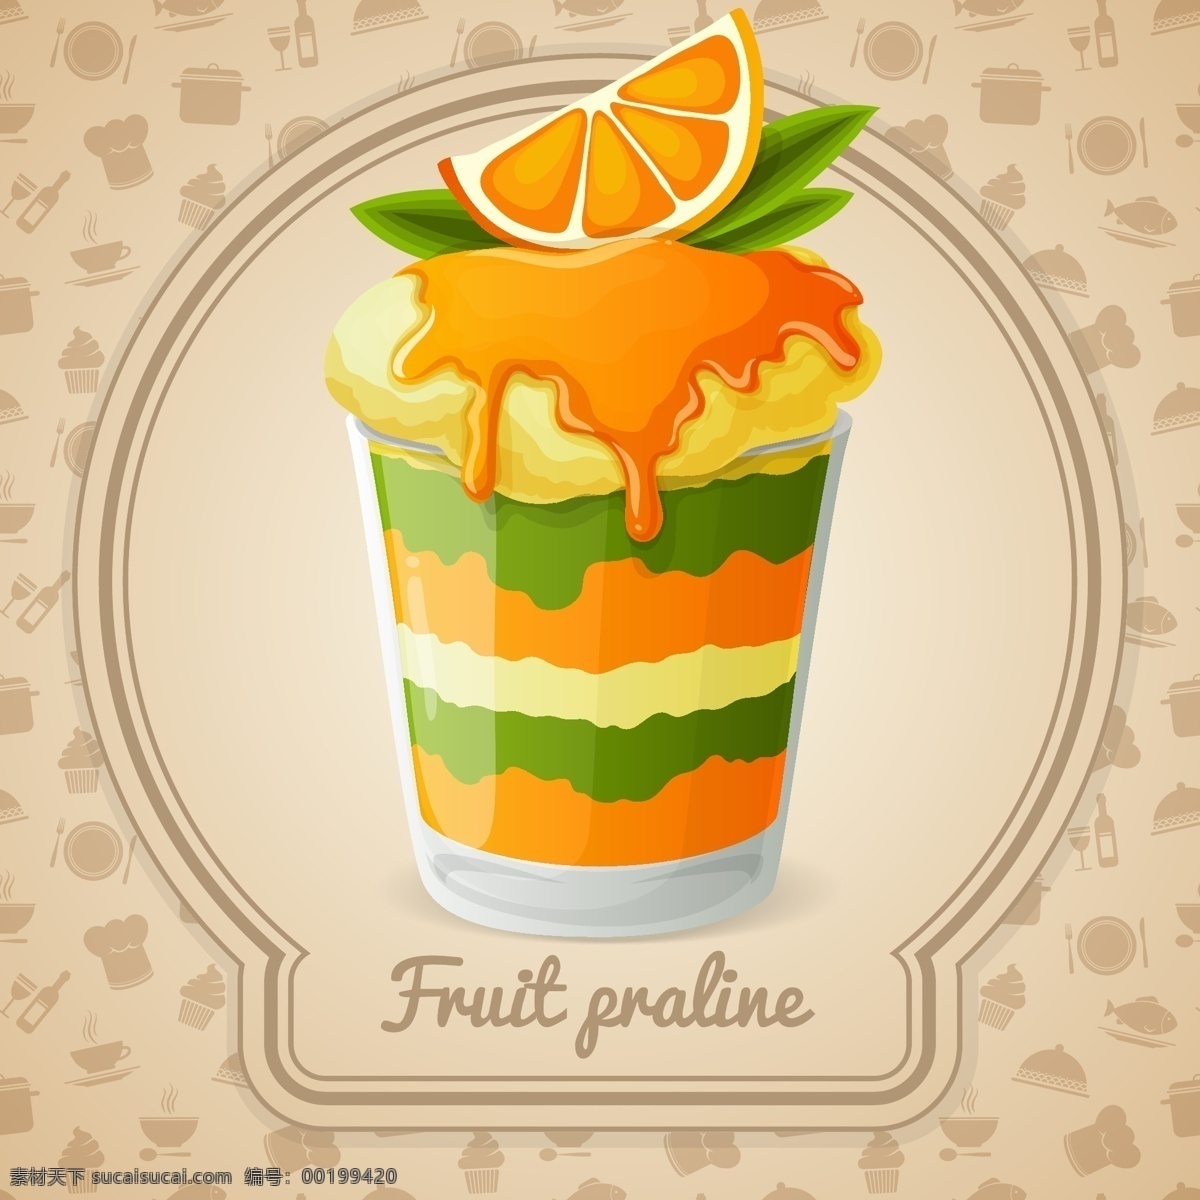 美味 橙子 冰 淇 林 插画 水彩 手绘 夏天 水果 桔子 冰淇淋